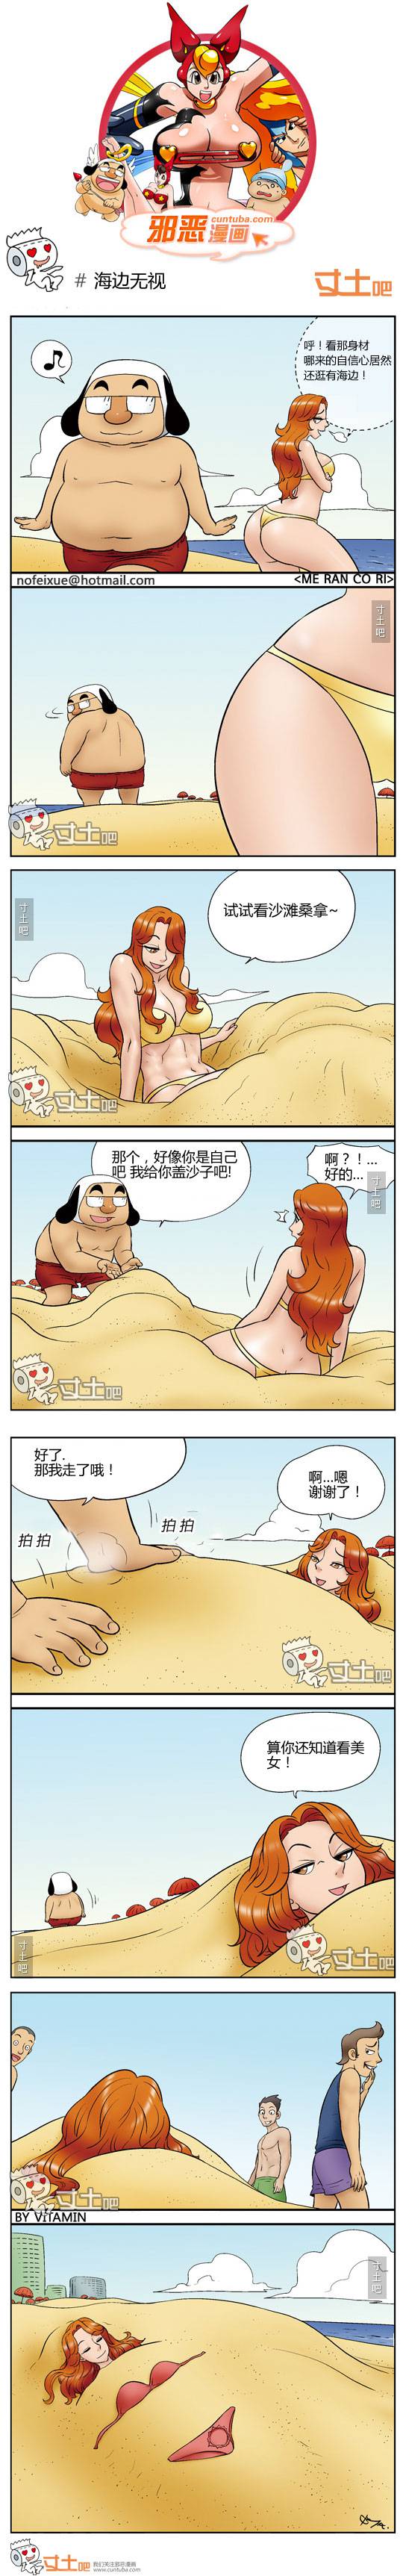 邪恶漫画爆笑囧图第129刊：有爱